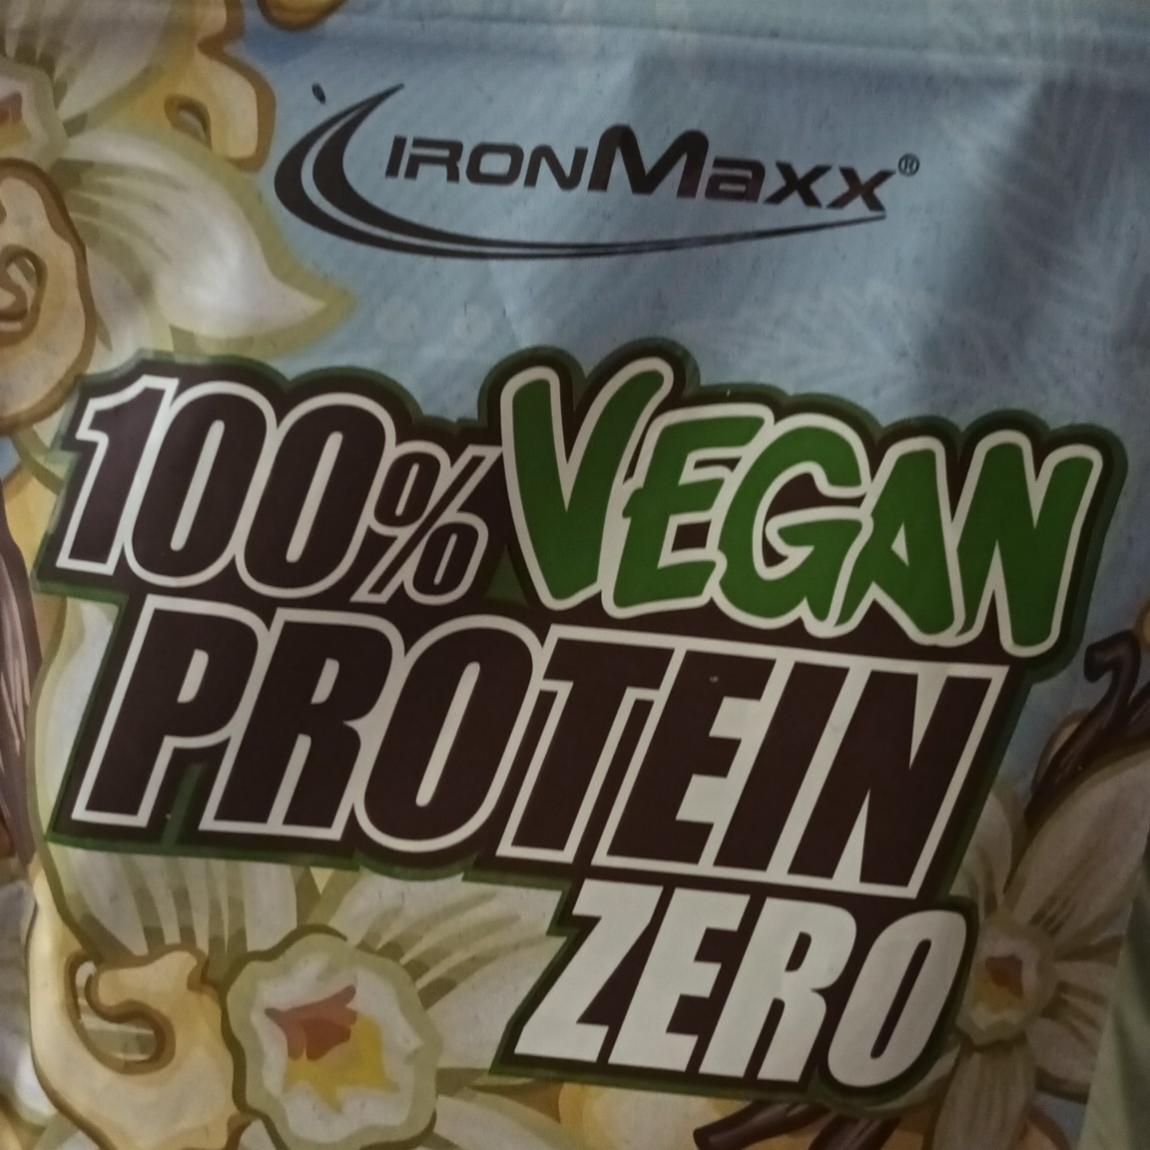 Zdjęcia - iron max 100%vegan protein zero